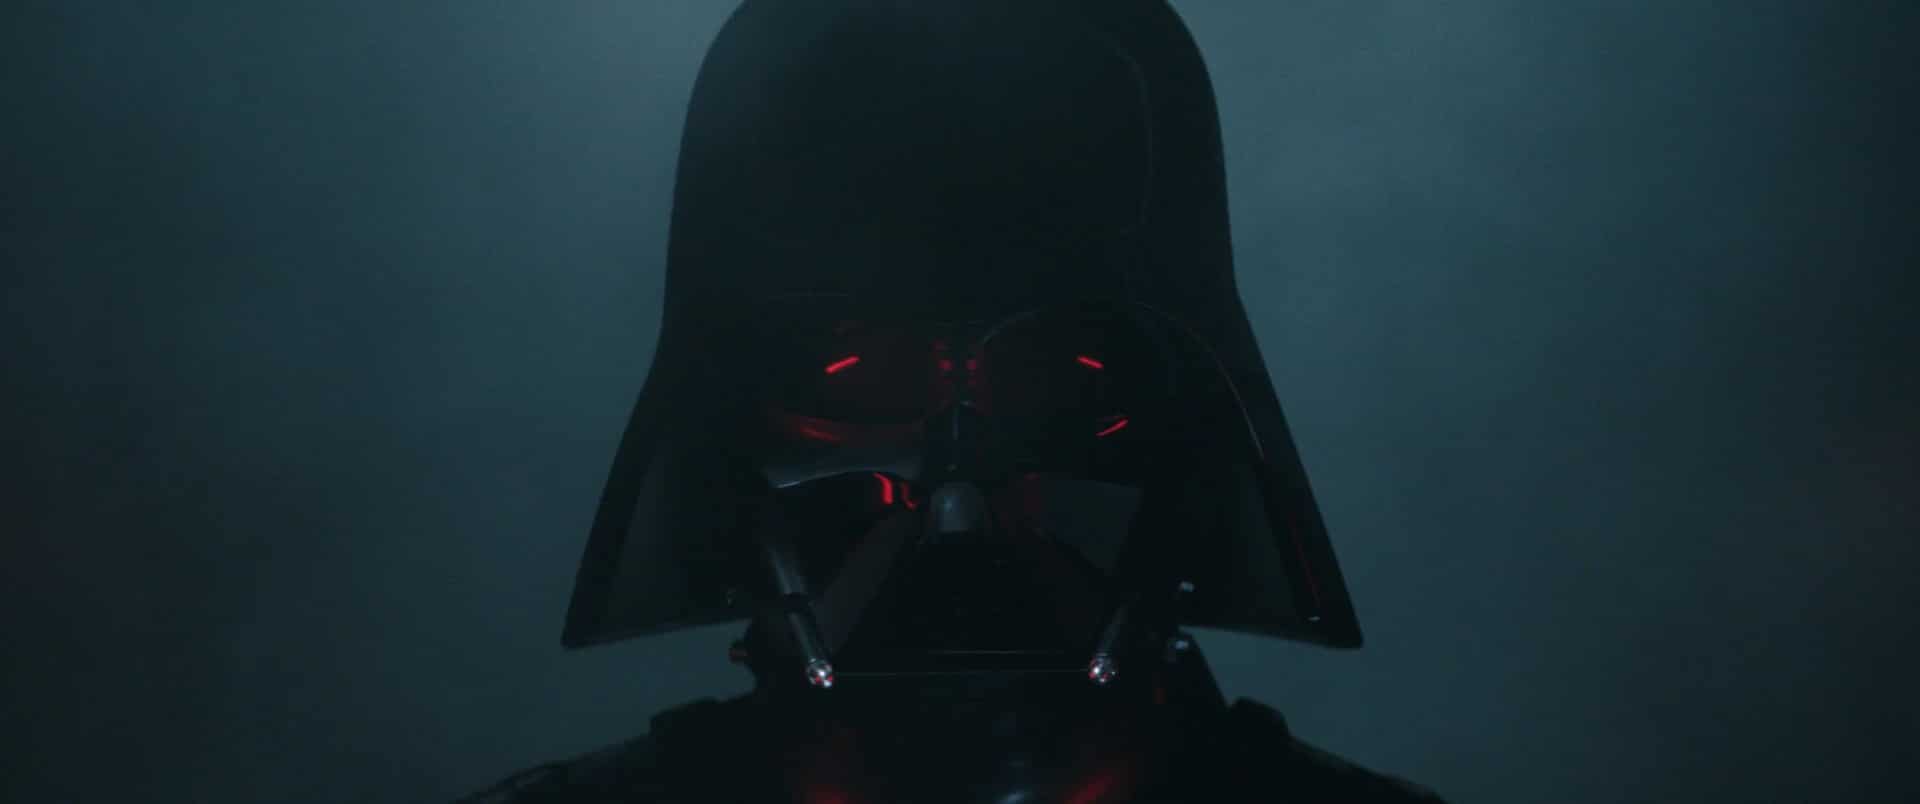 Obi-Wan Kenobi, Folge 3, Teil III, Rückblick Darth Vaders Reunion-Showdown verschwendet mit schlampiger Ausführung und Konstruktion, aber Reva und Leia sind gut